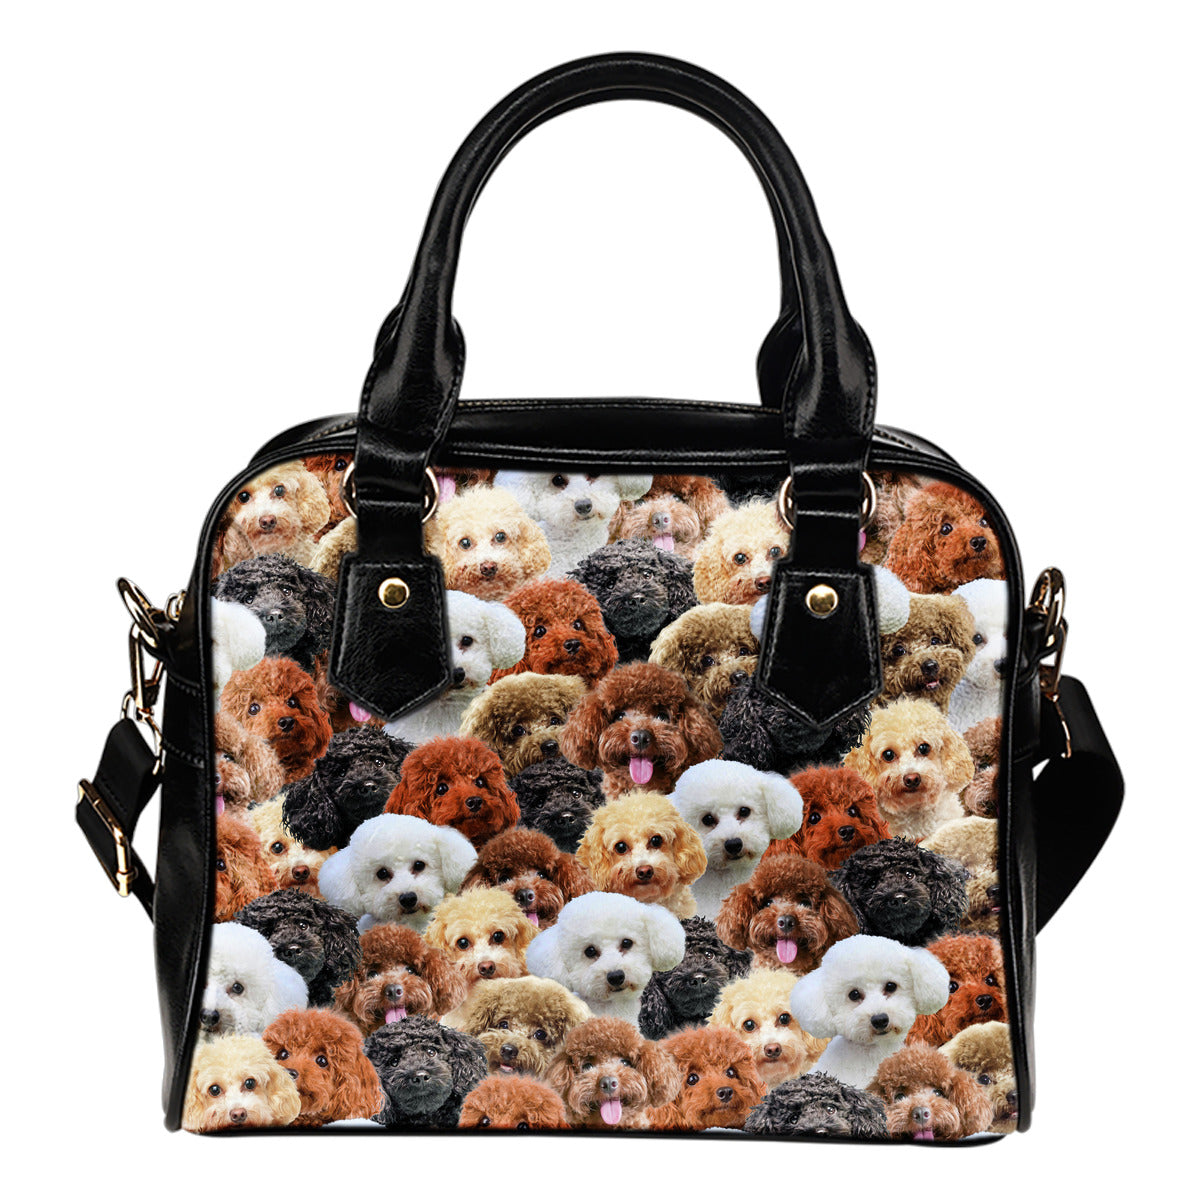 Poodle Shoulder Bag - Multi